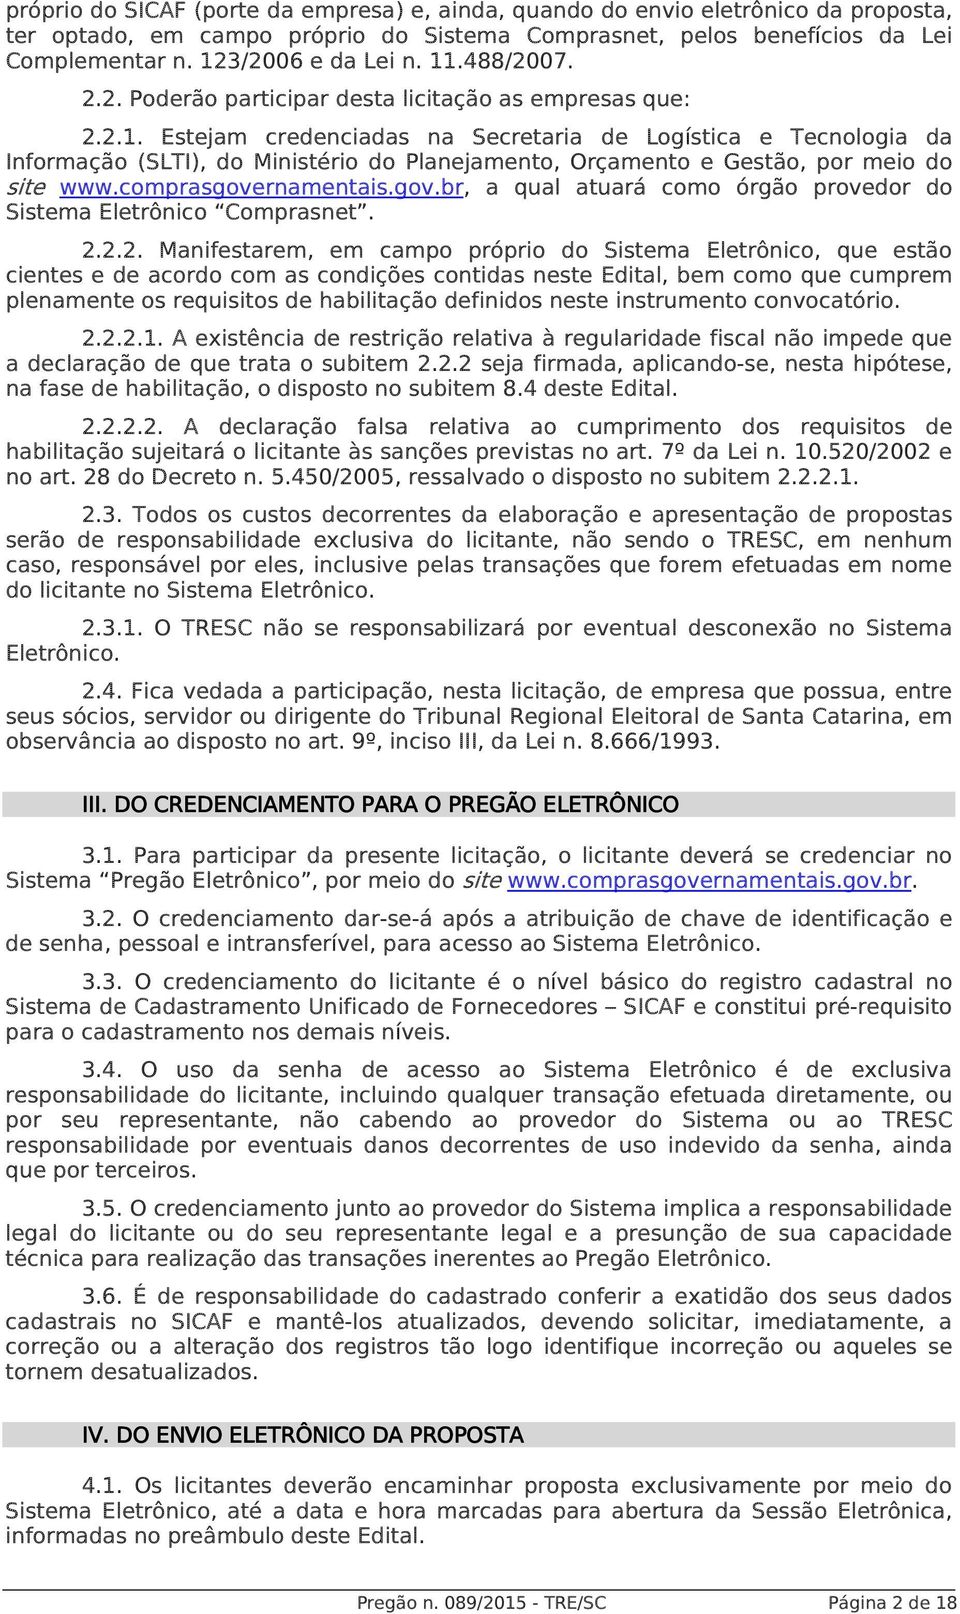 comprasgovernamentais.gov.br, a qual atuará como órgão provedor do Sistema Eletrônico Comprasnet. 2.